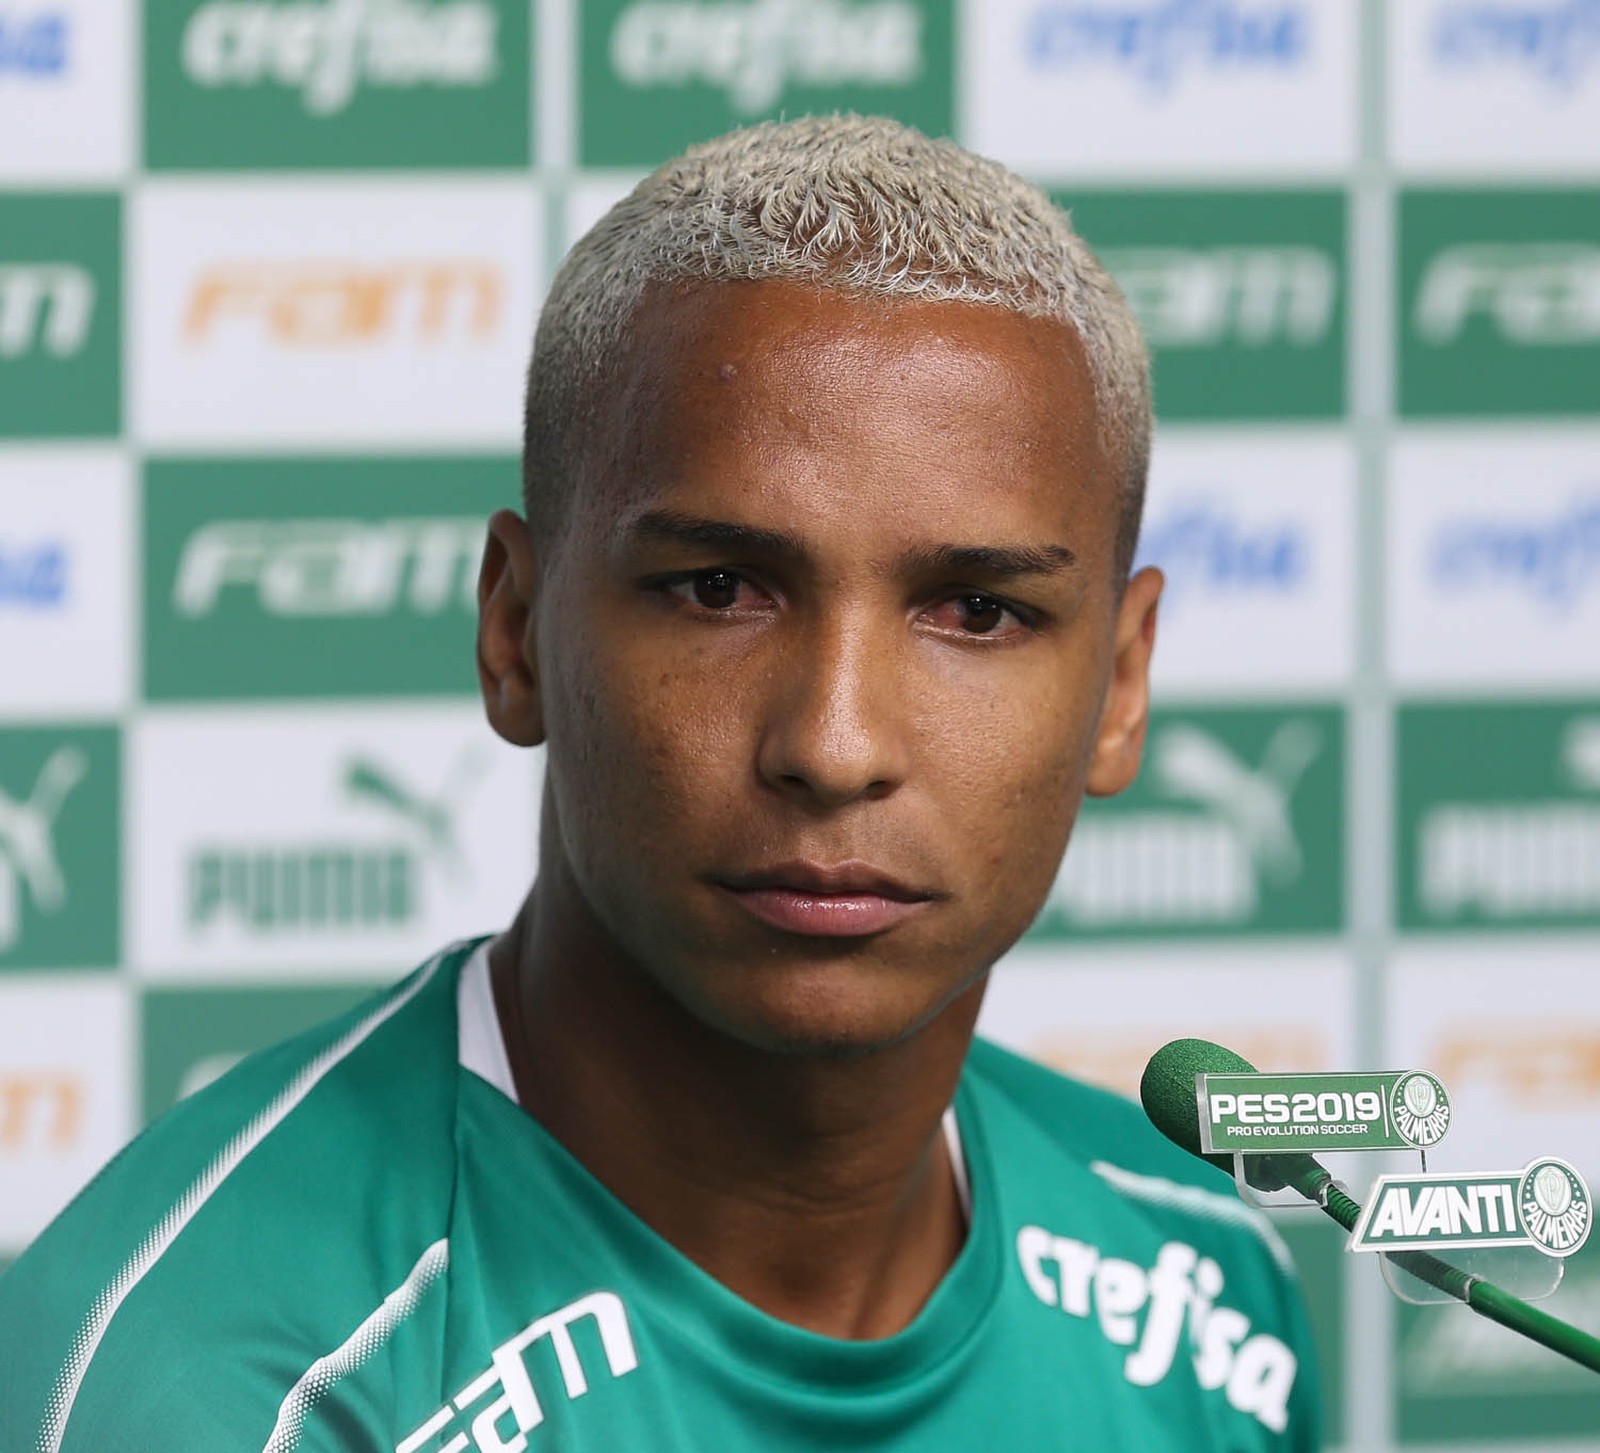 VÍDEO: Cantor diz que 'Palmeiras não tem Mundial' e é agredido em